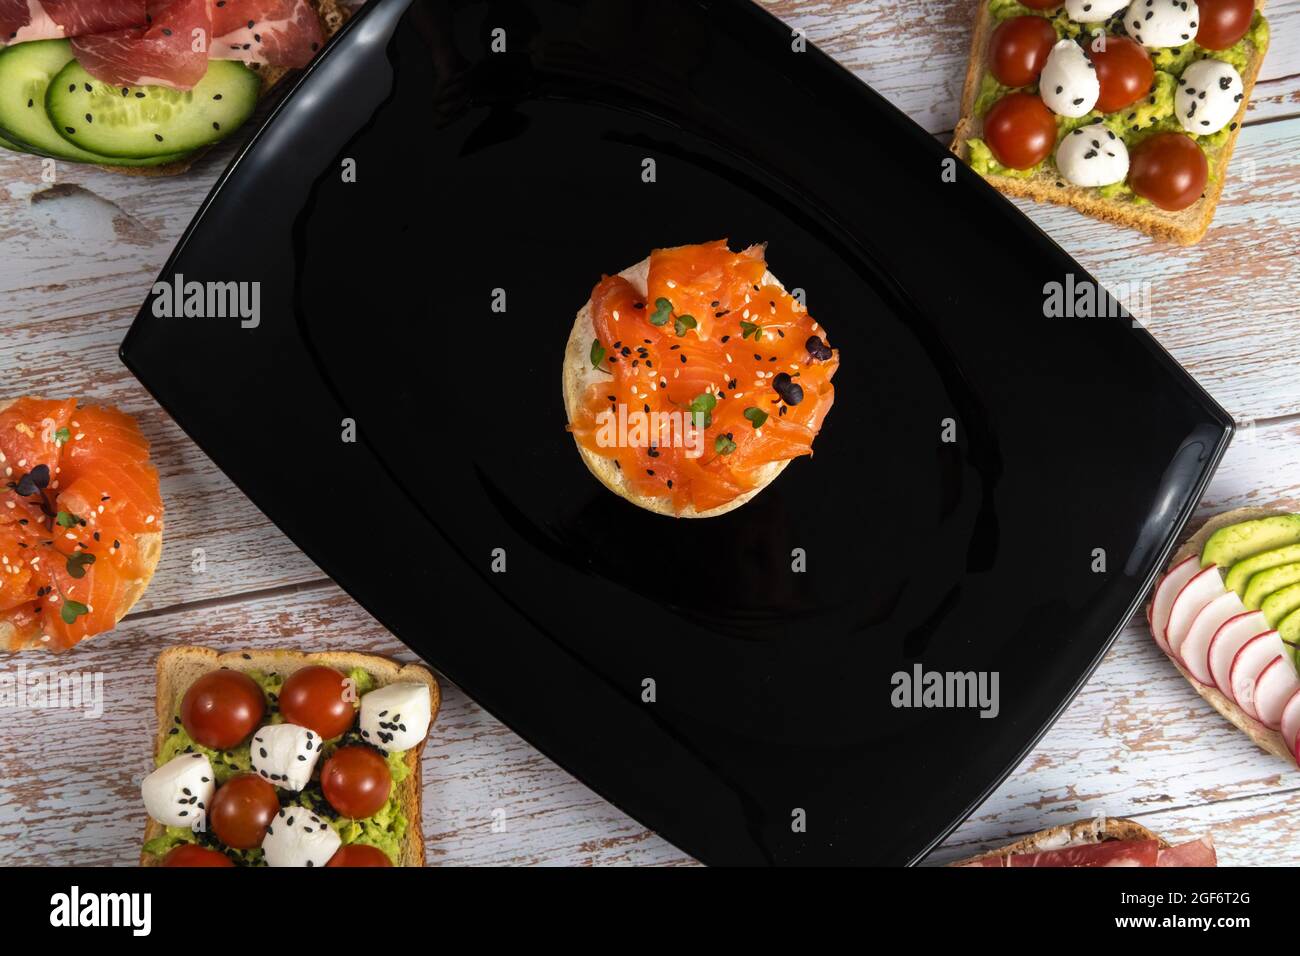 Ein Sandwich mit rotem Fisch befindet sich auf einem schwarzen Teller und es gibt viele andere Sandwiches. Stockfoto